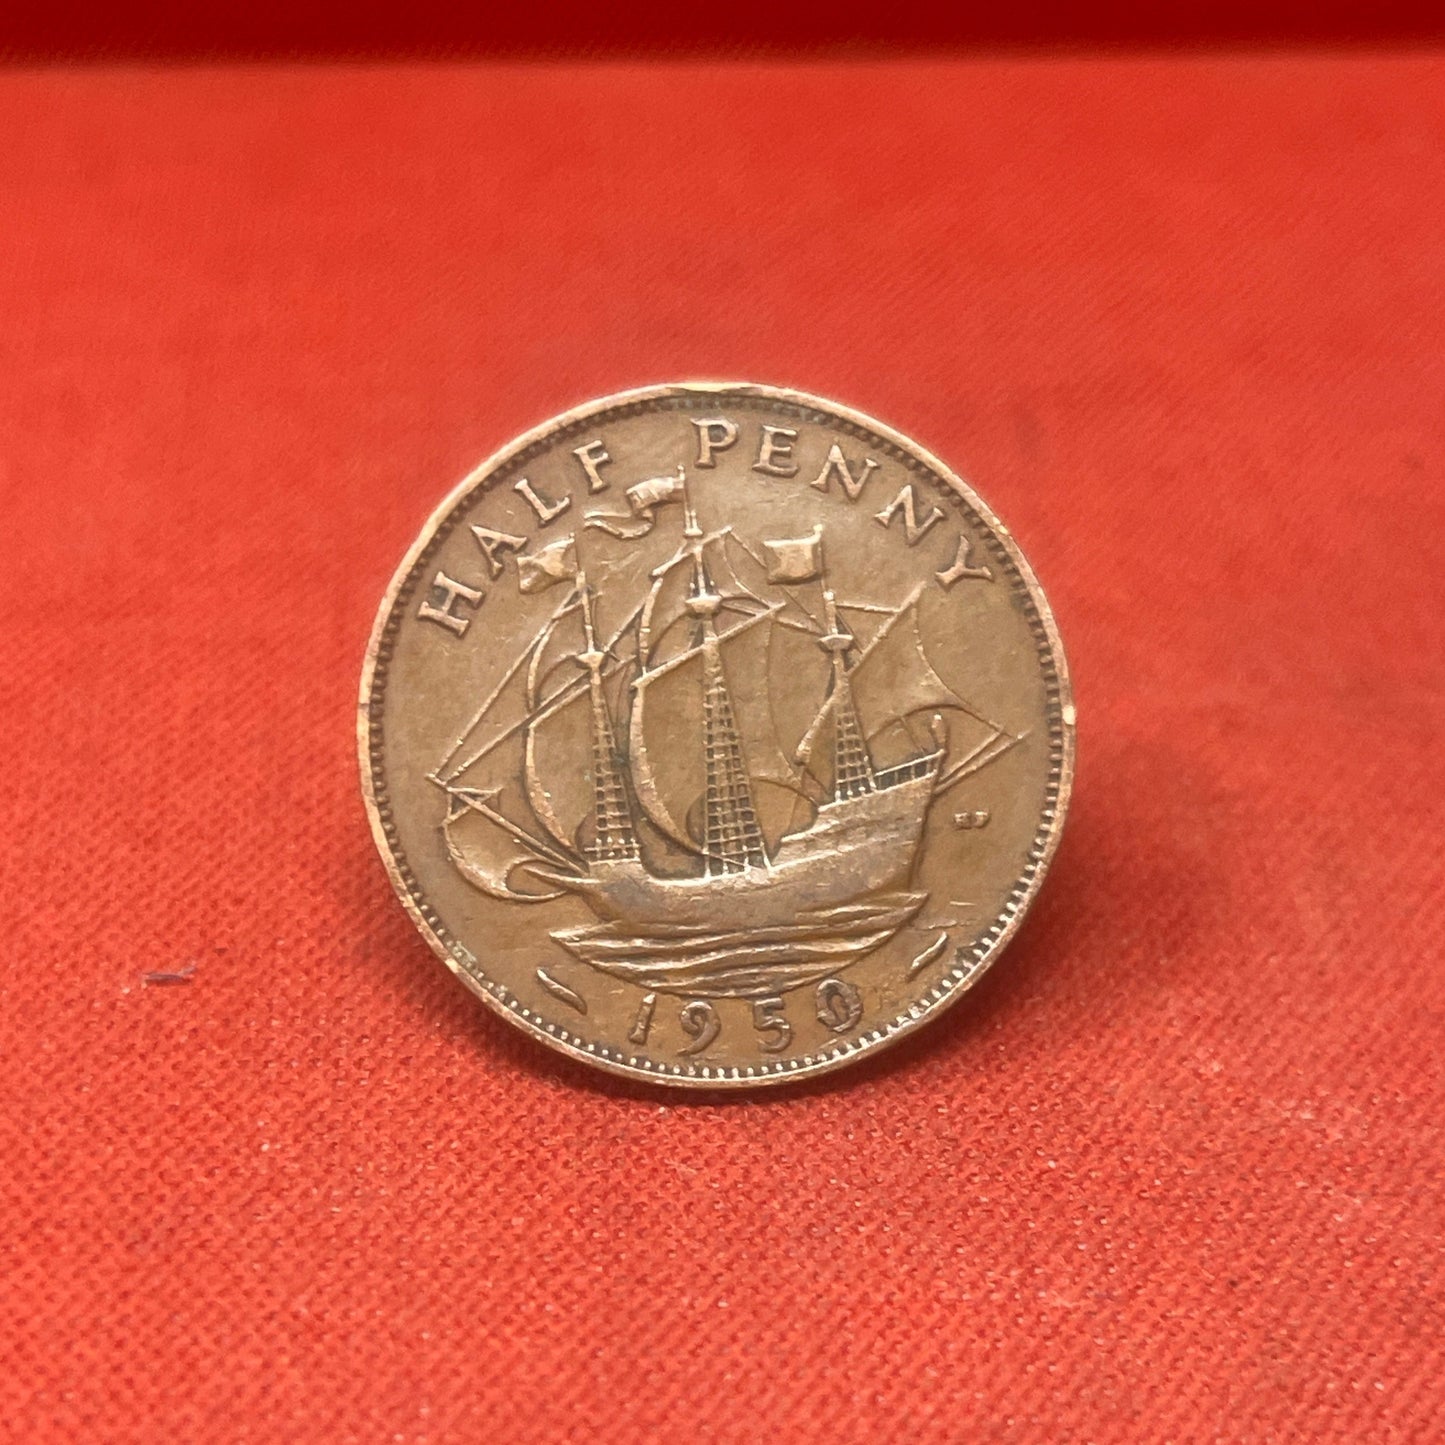 King George VI 1949 Half Penny